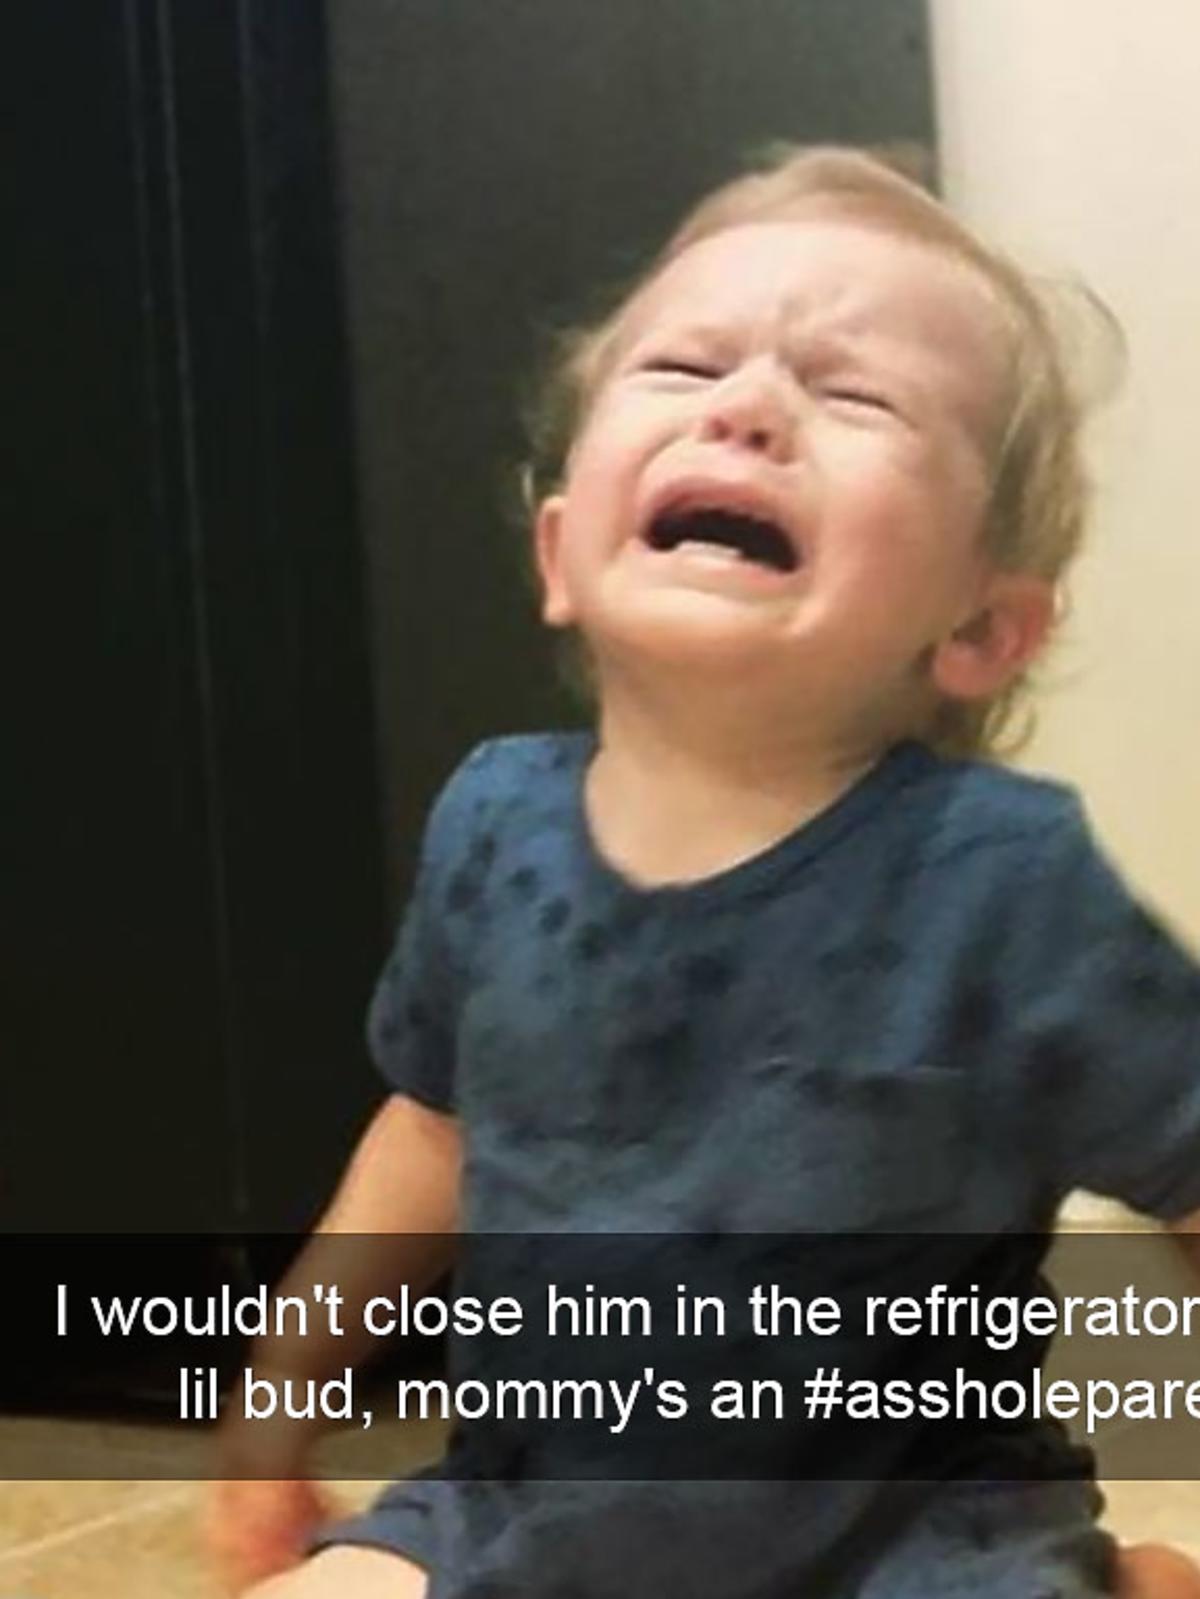 Chłopiec płacze, bo mama nie zamknęła go w lodówce